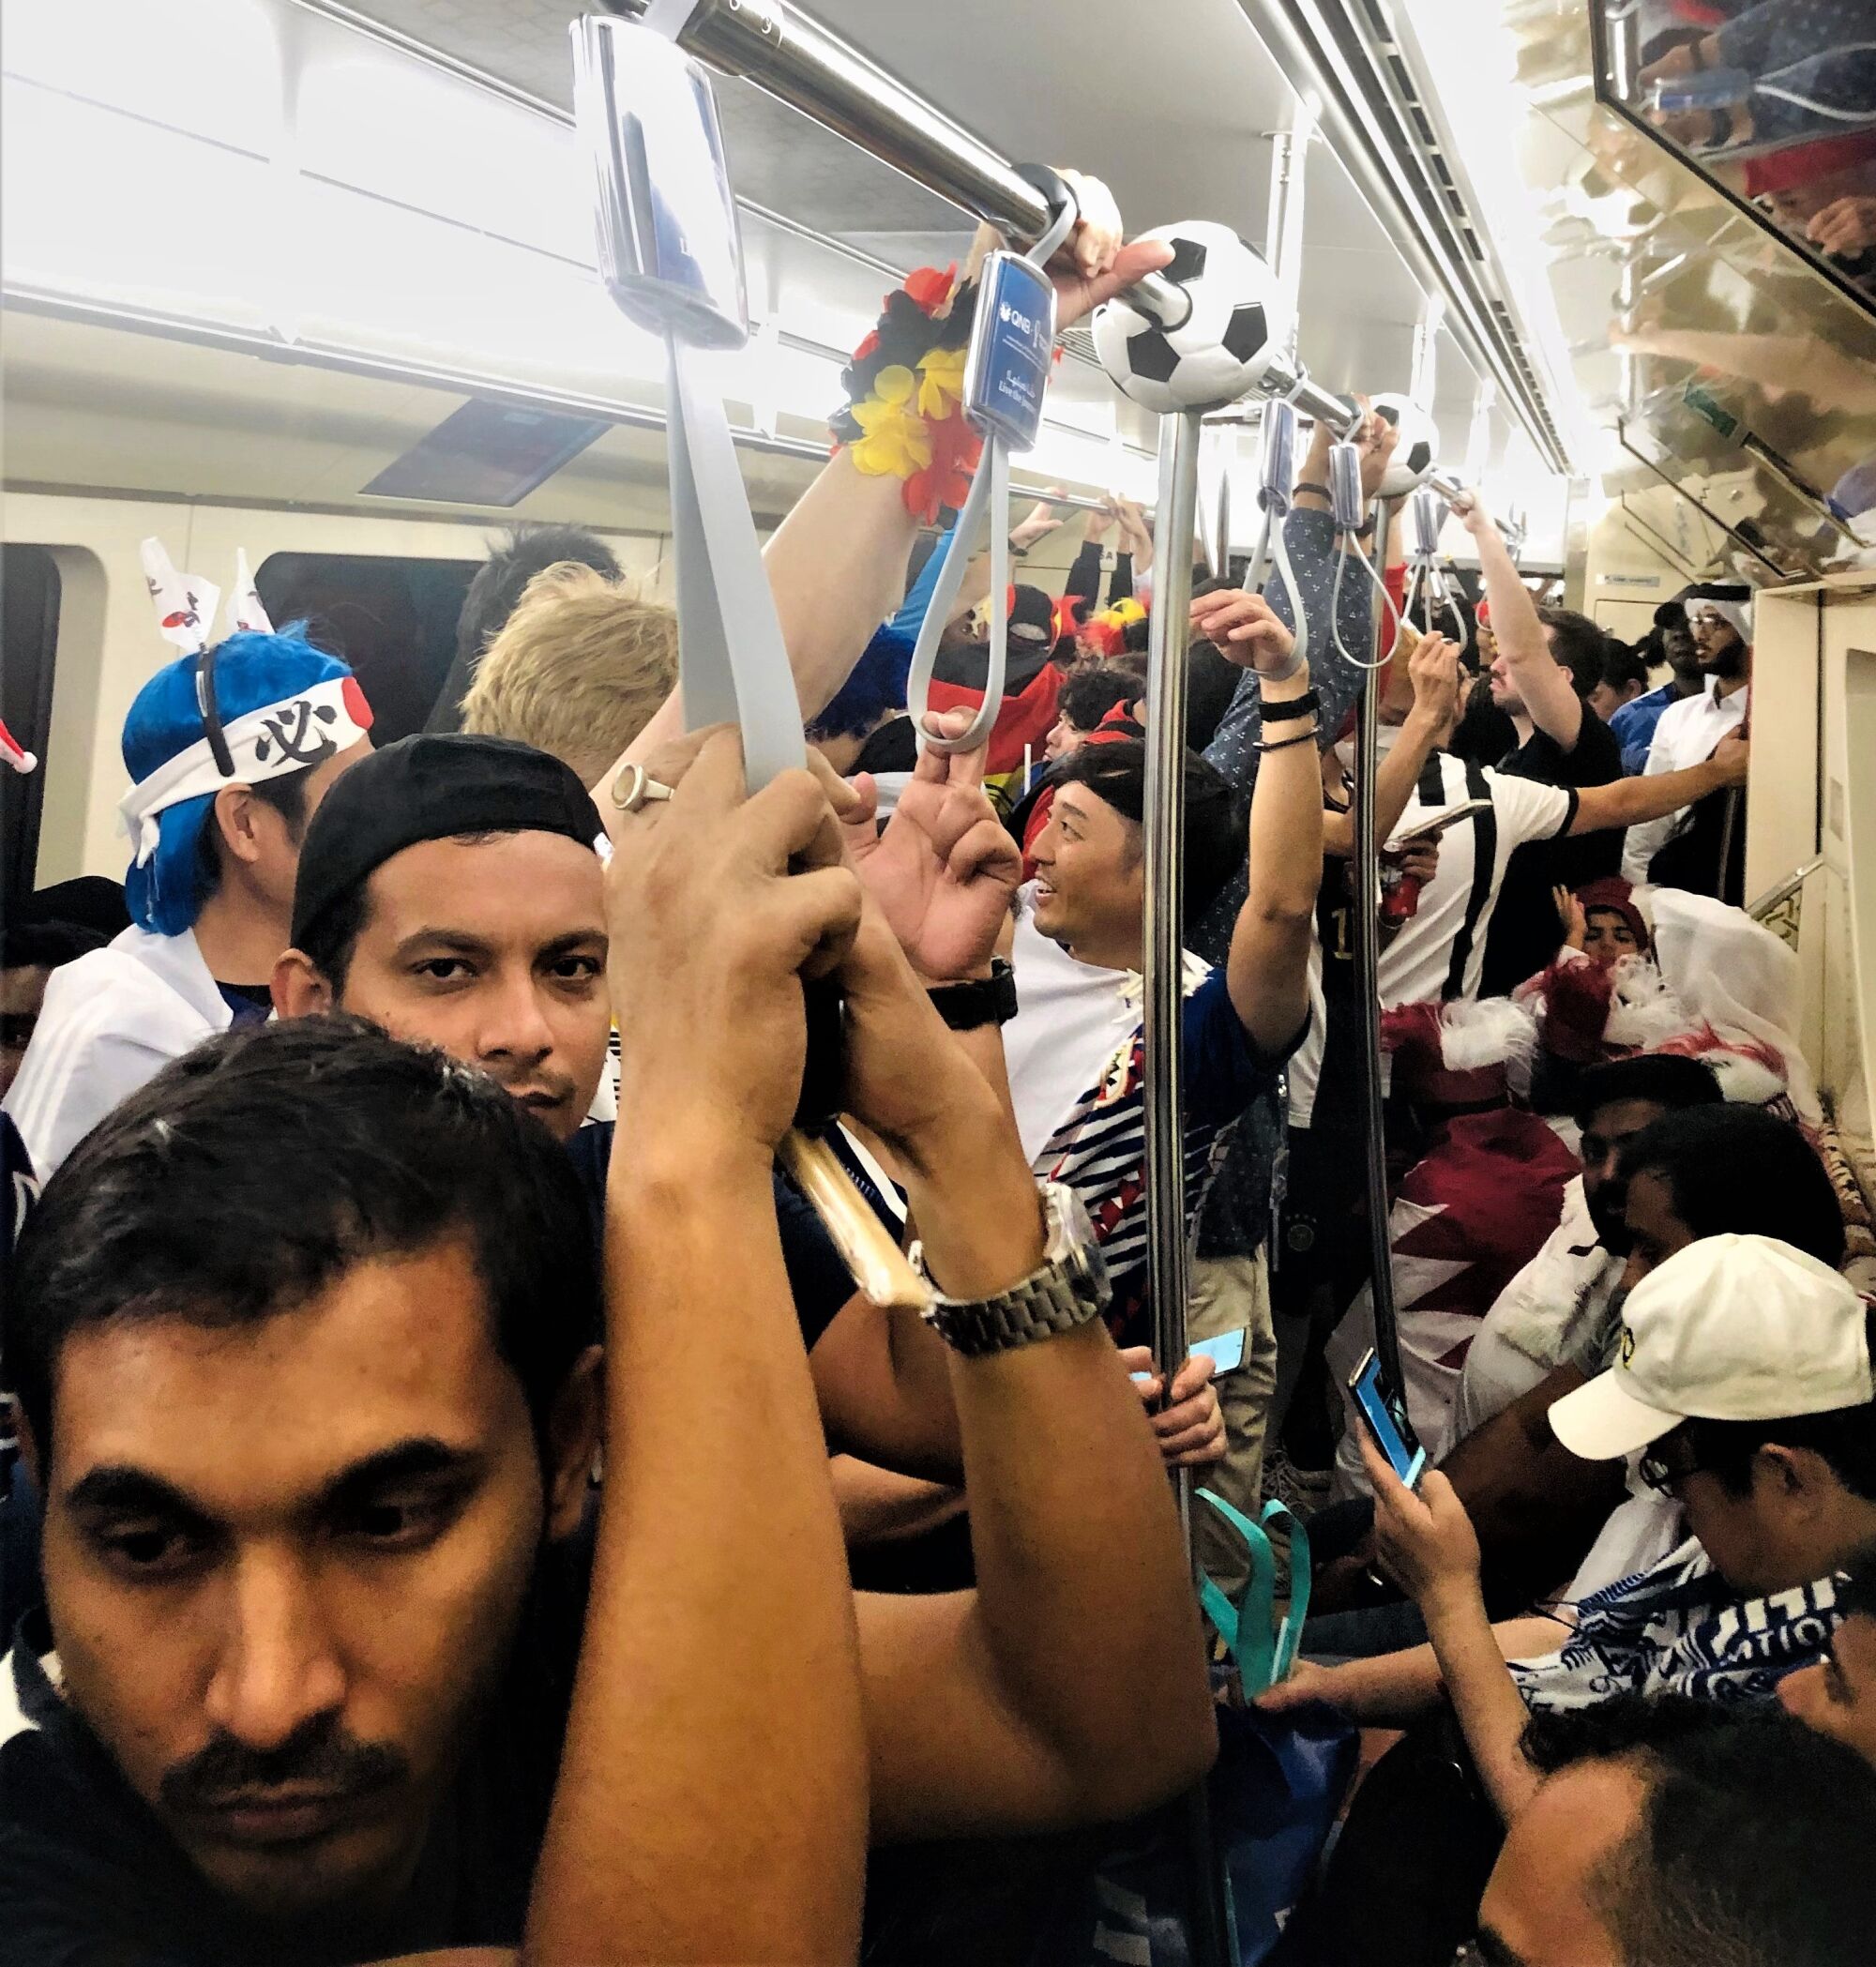 कतर में बुधवार को खचाखच भरी मेट्रो ट्रेन में खड़े विश्व कप प्रशंसक।